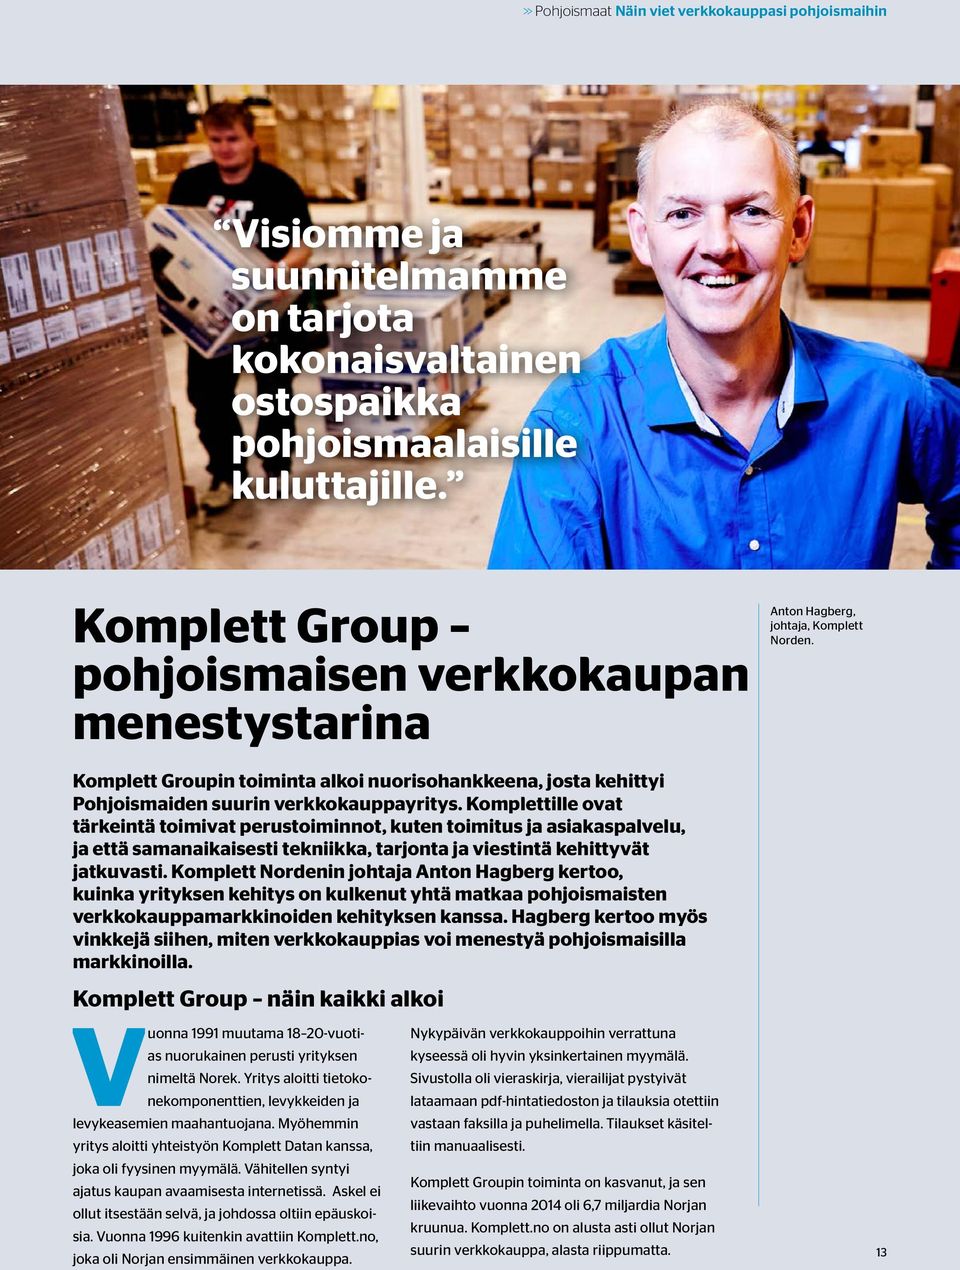 Komplett Groupin toiminta alkoi nuorisohankkeena, josta kehittyi Pohjoismaiden suurin verkkokauppayritys.